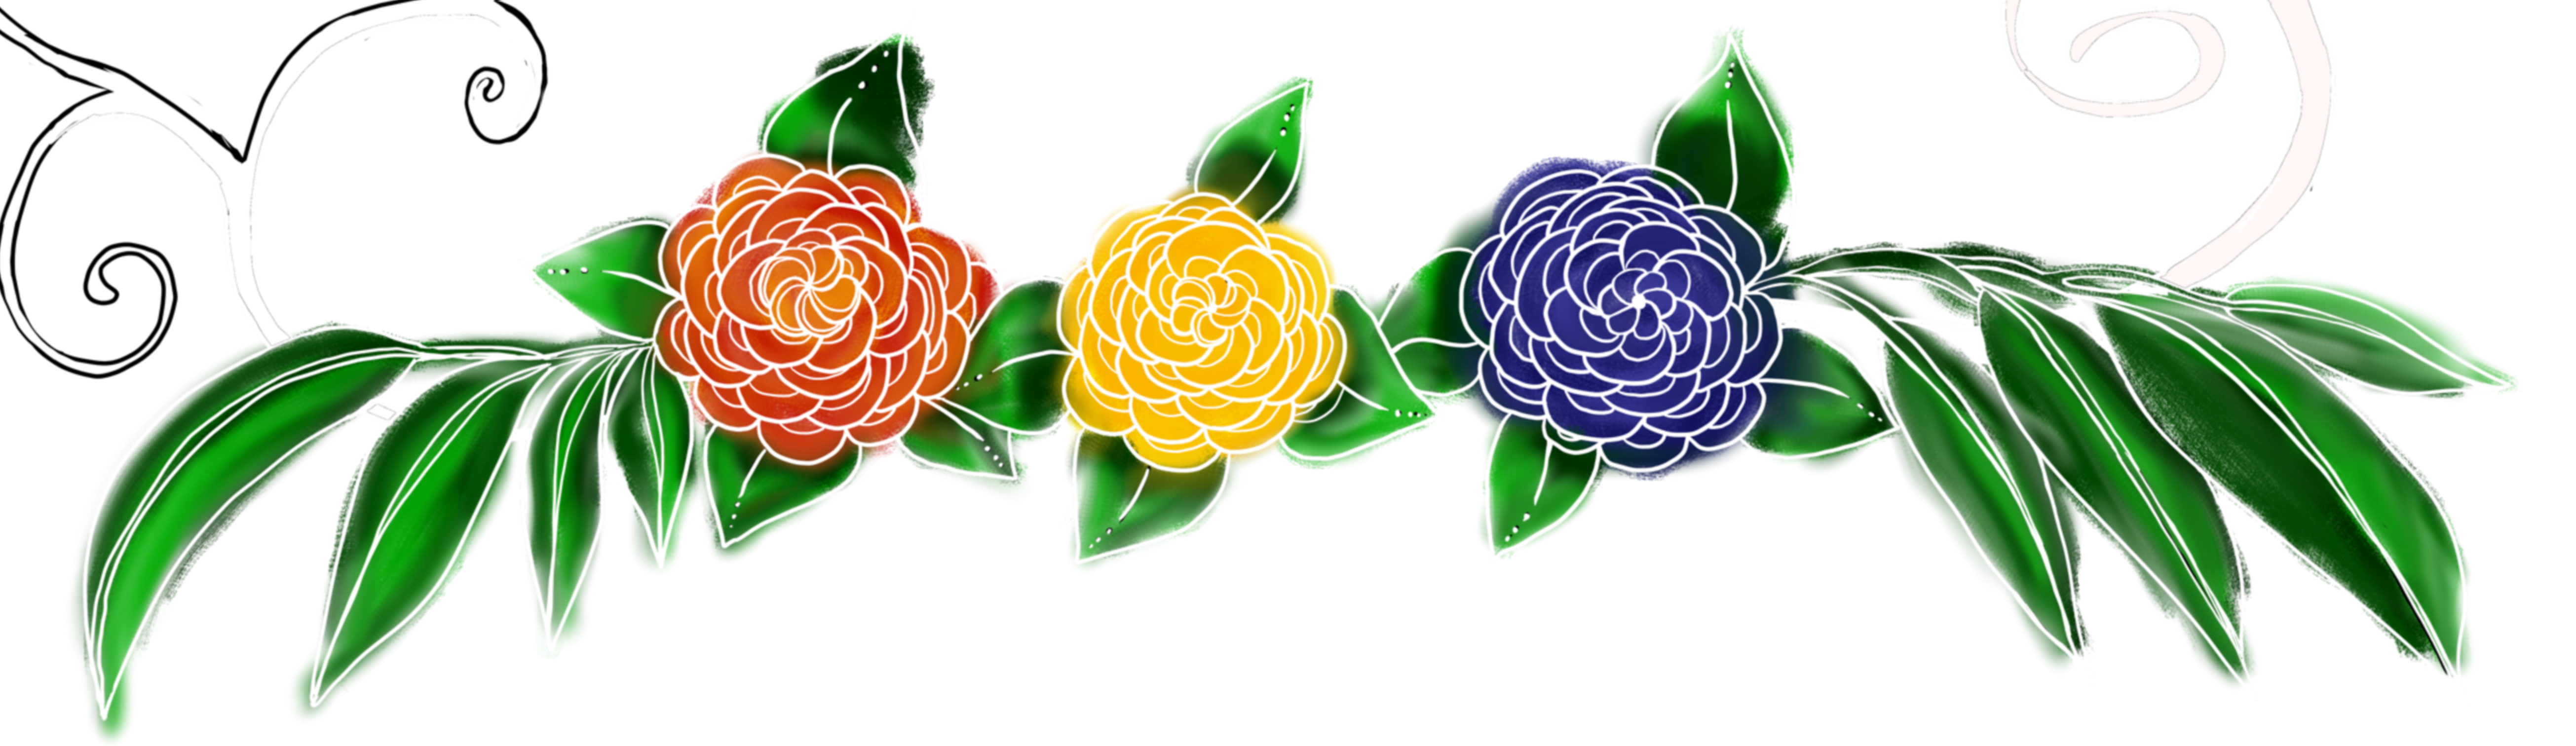 Floral doodle banner